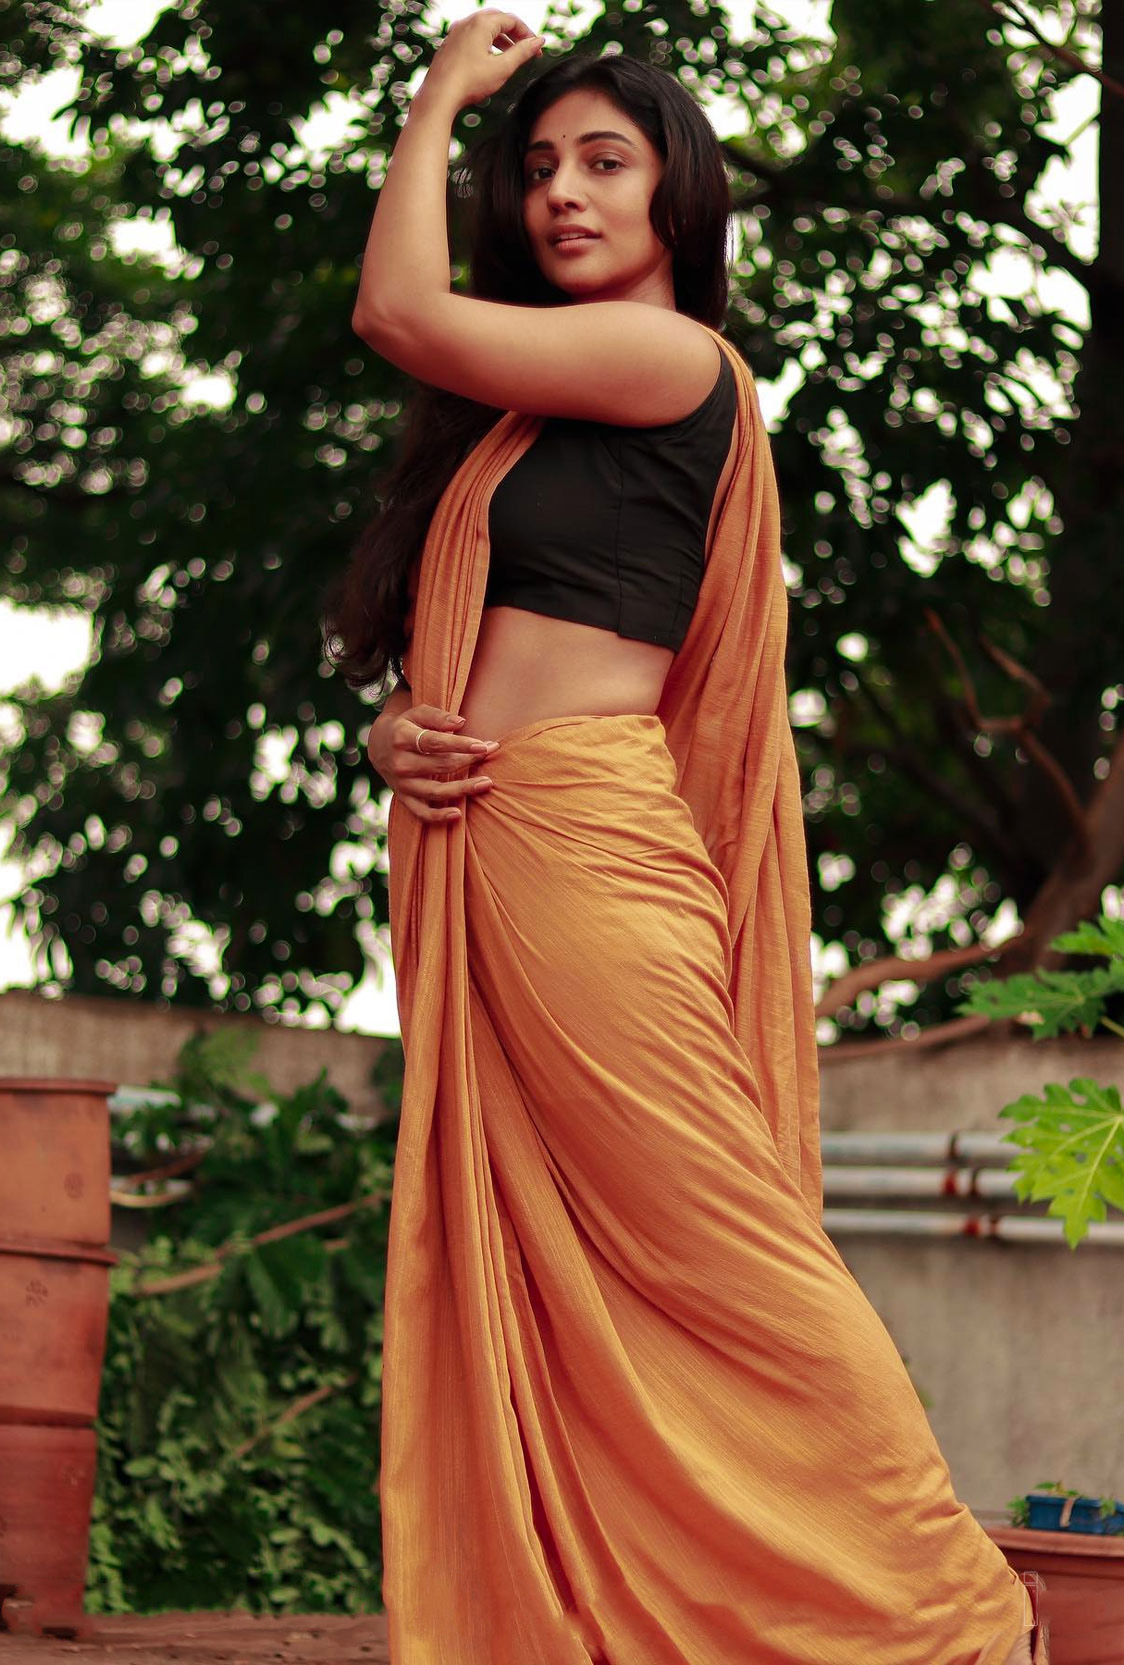 Bommu Lakshmi In Saree Hot Photos Bommu-Lakshmi-in-saree-photos-21